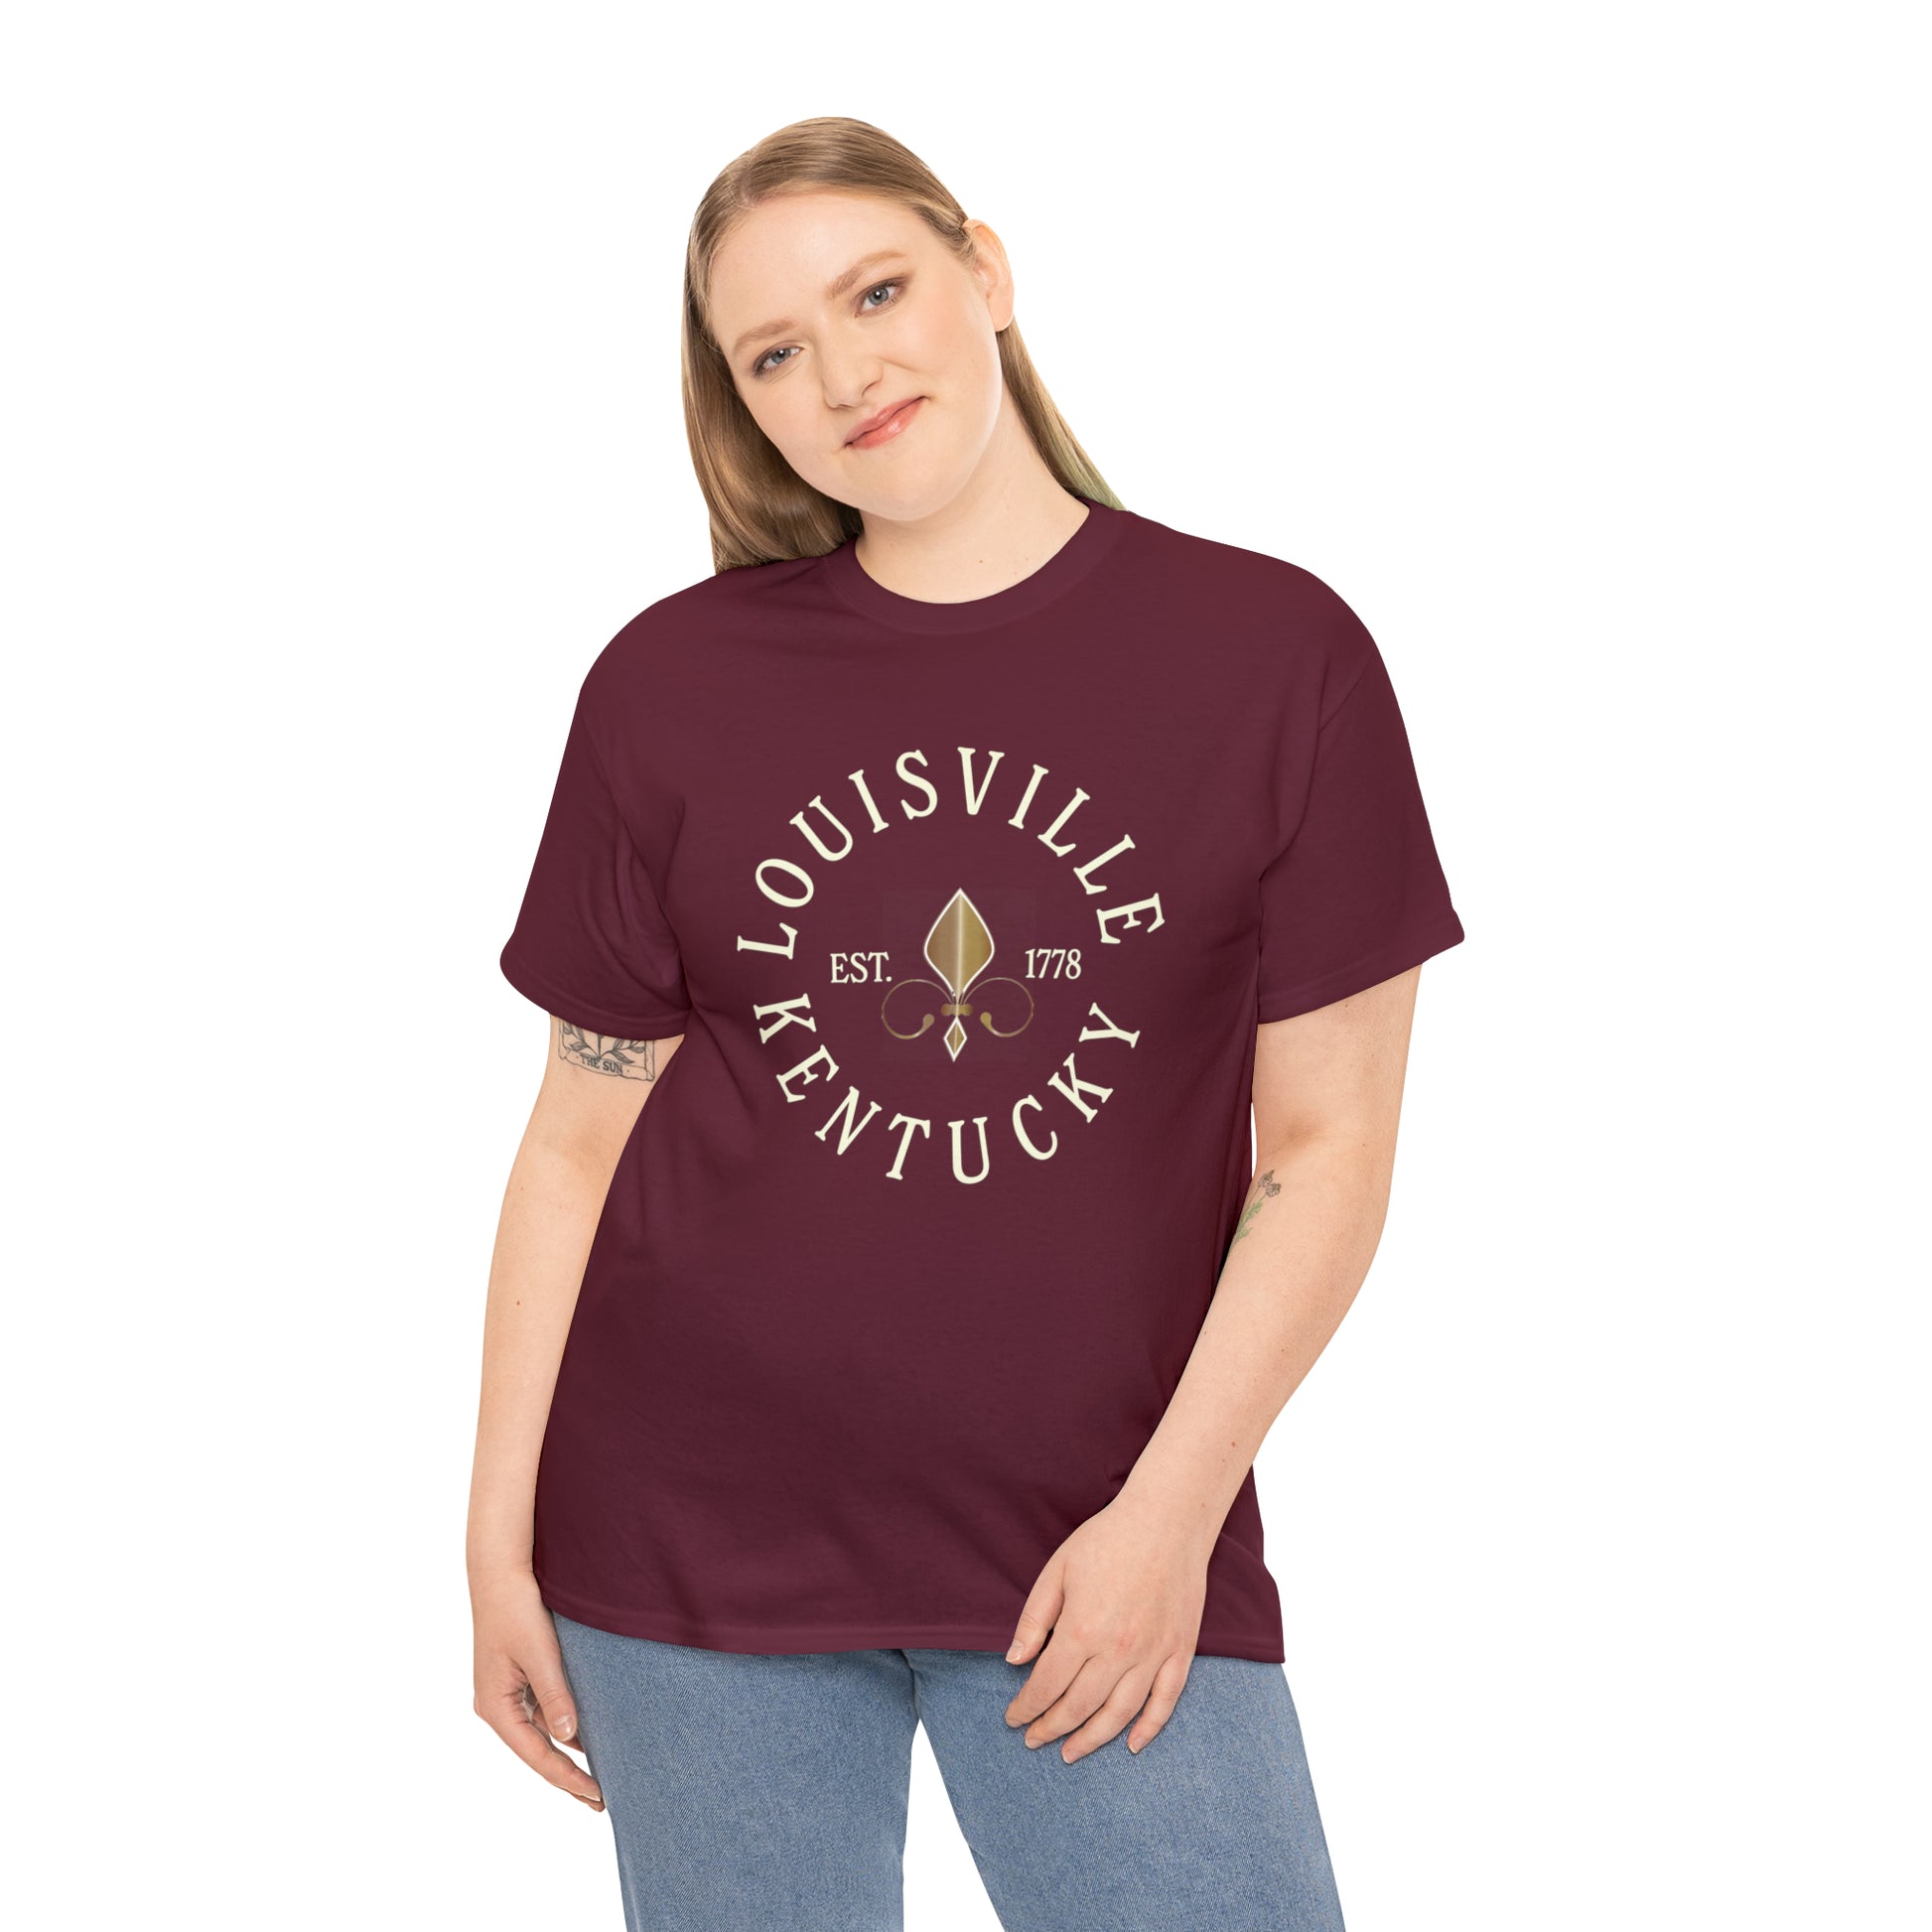 university of louisville womens shirts